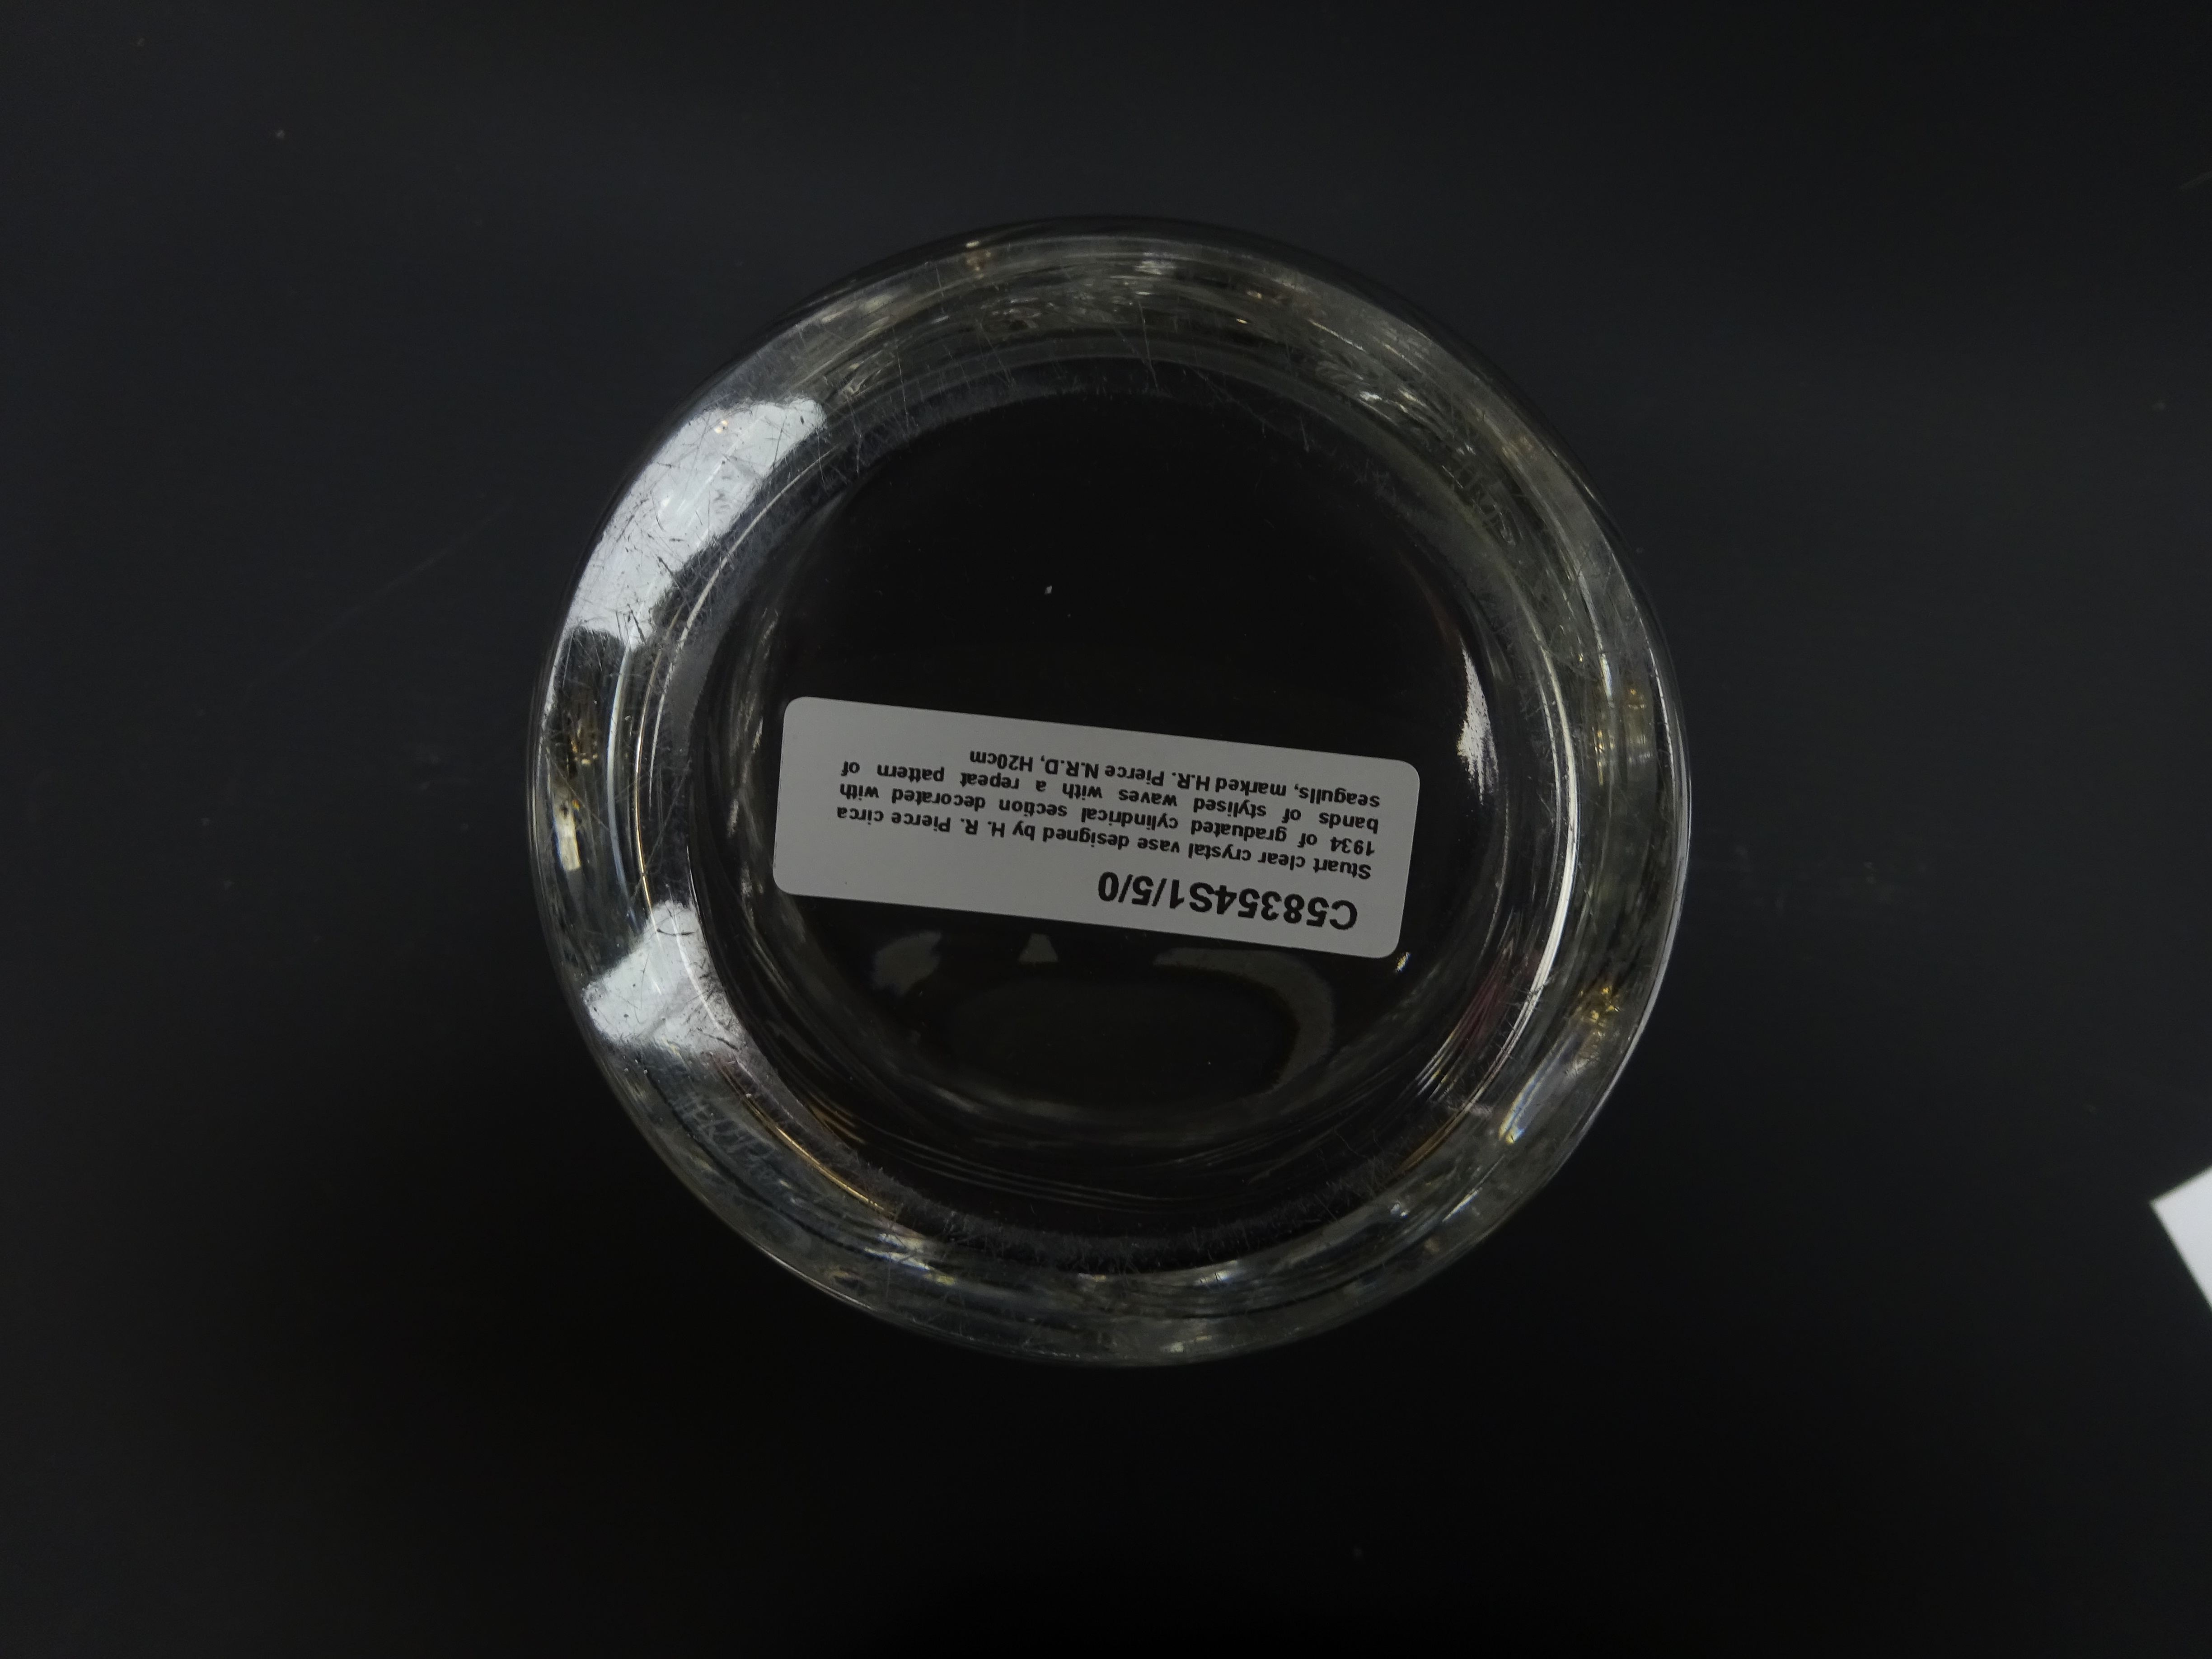 Stuart clear crystal vase designed by H. R. - Image 4 of 4